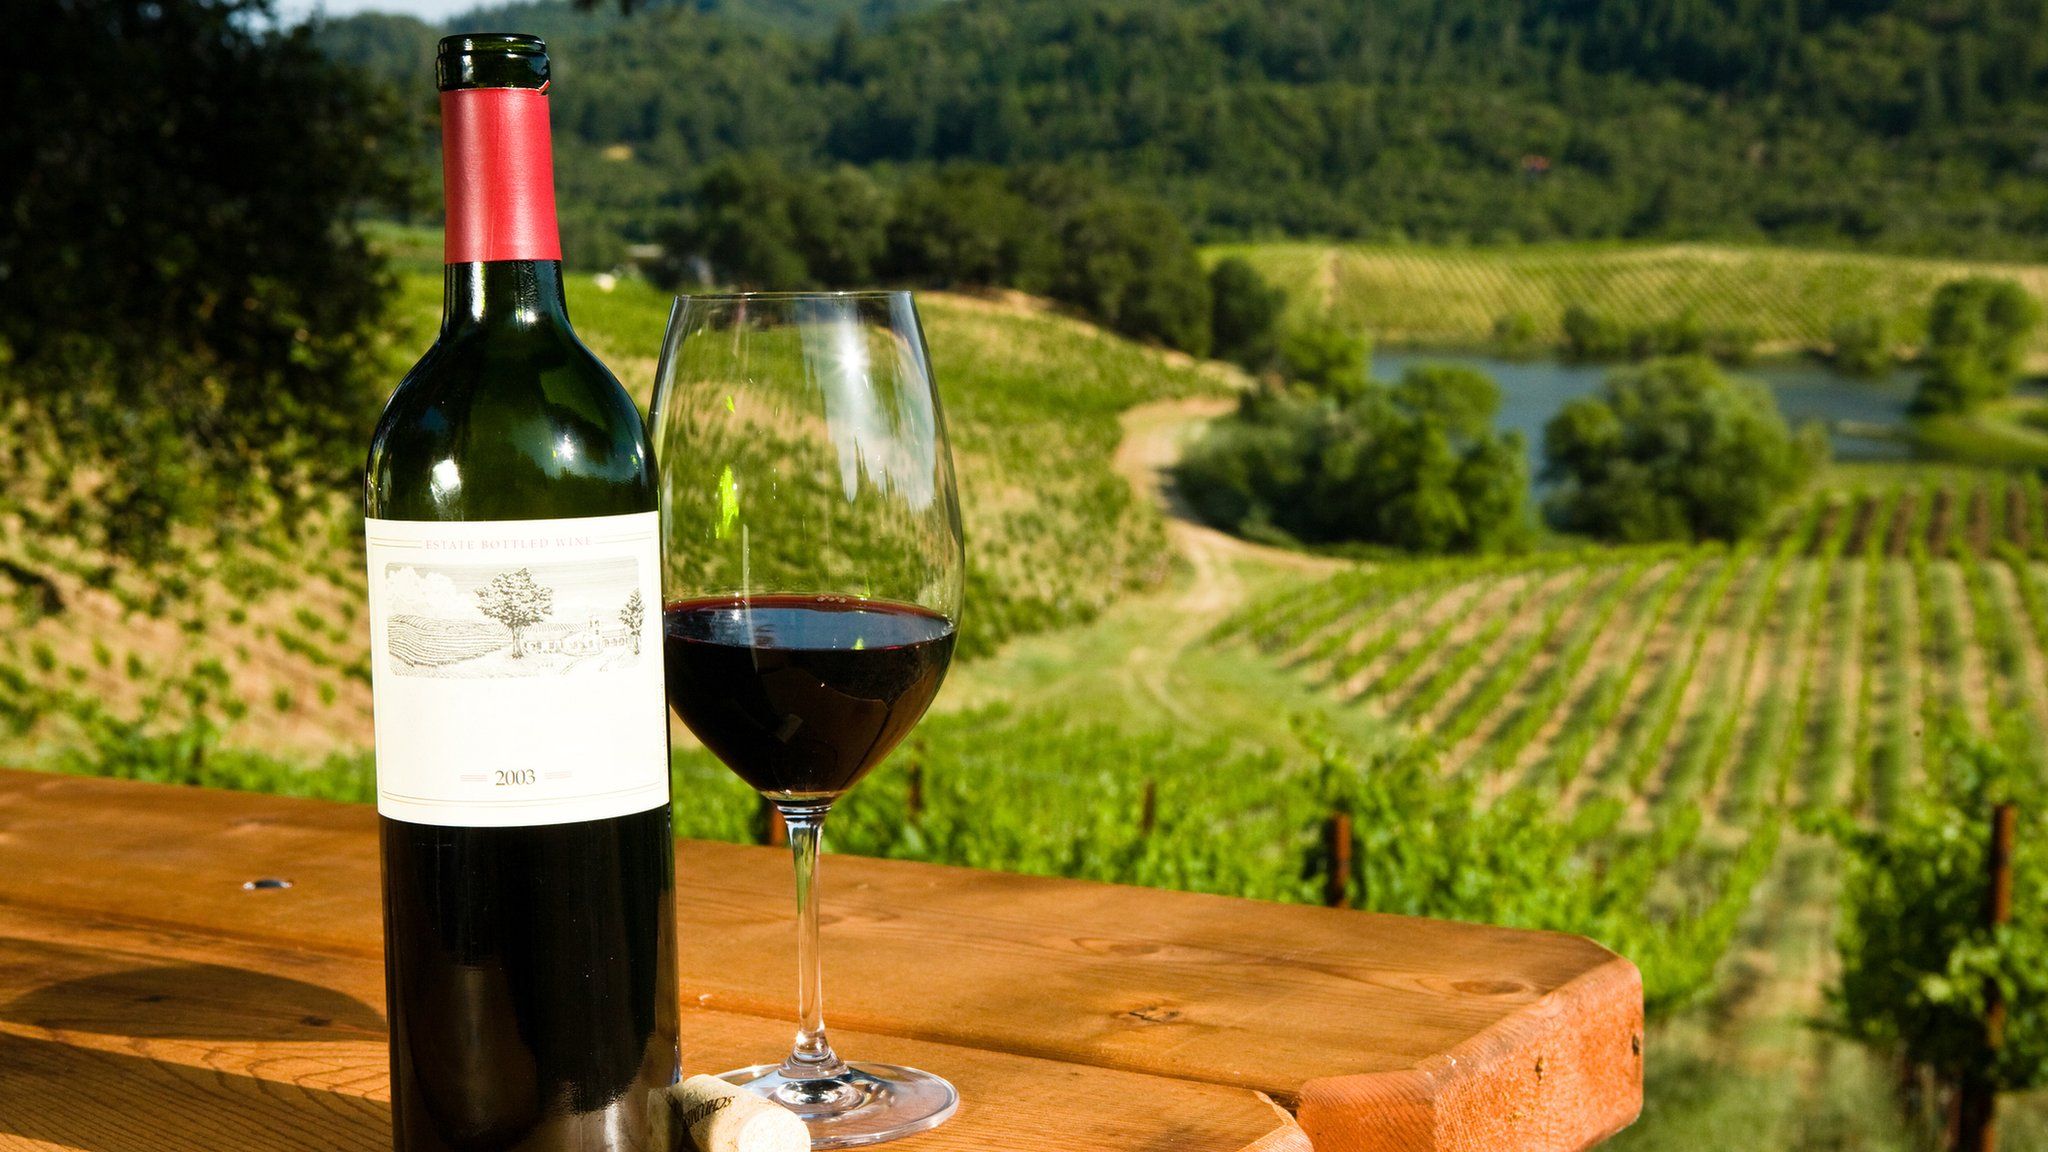 Bottle of wine in a vineyard